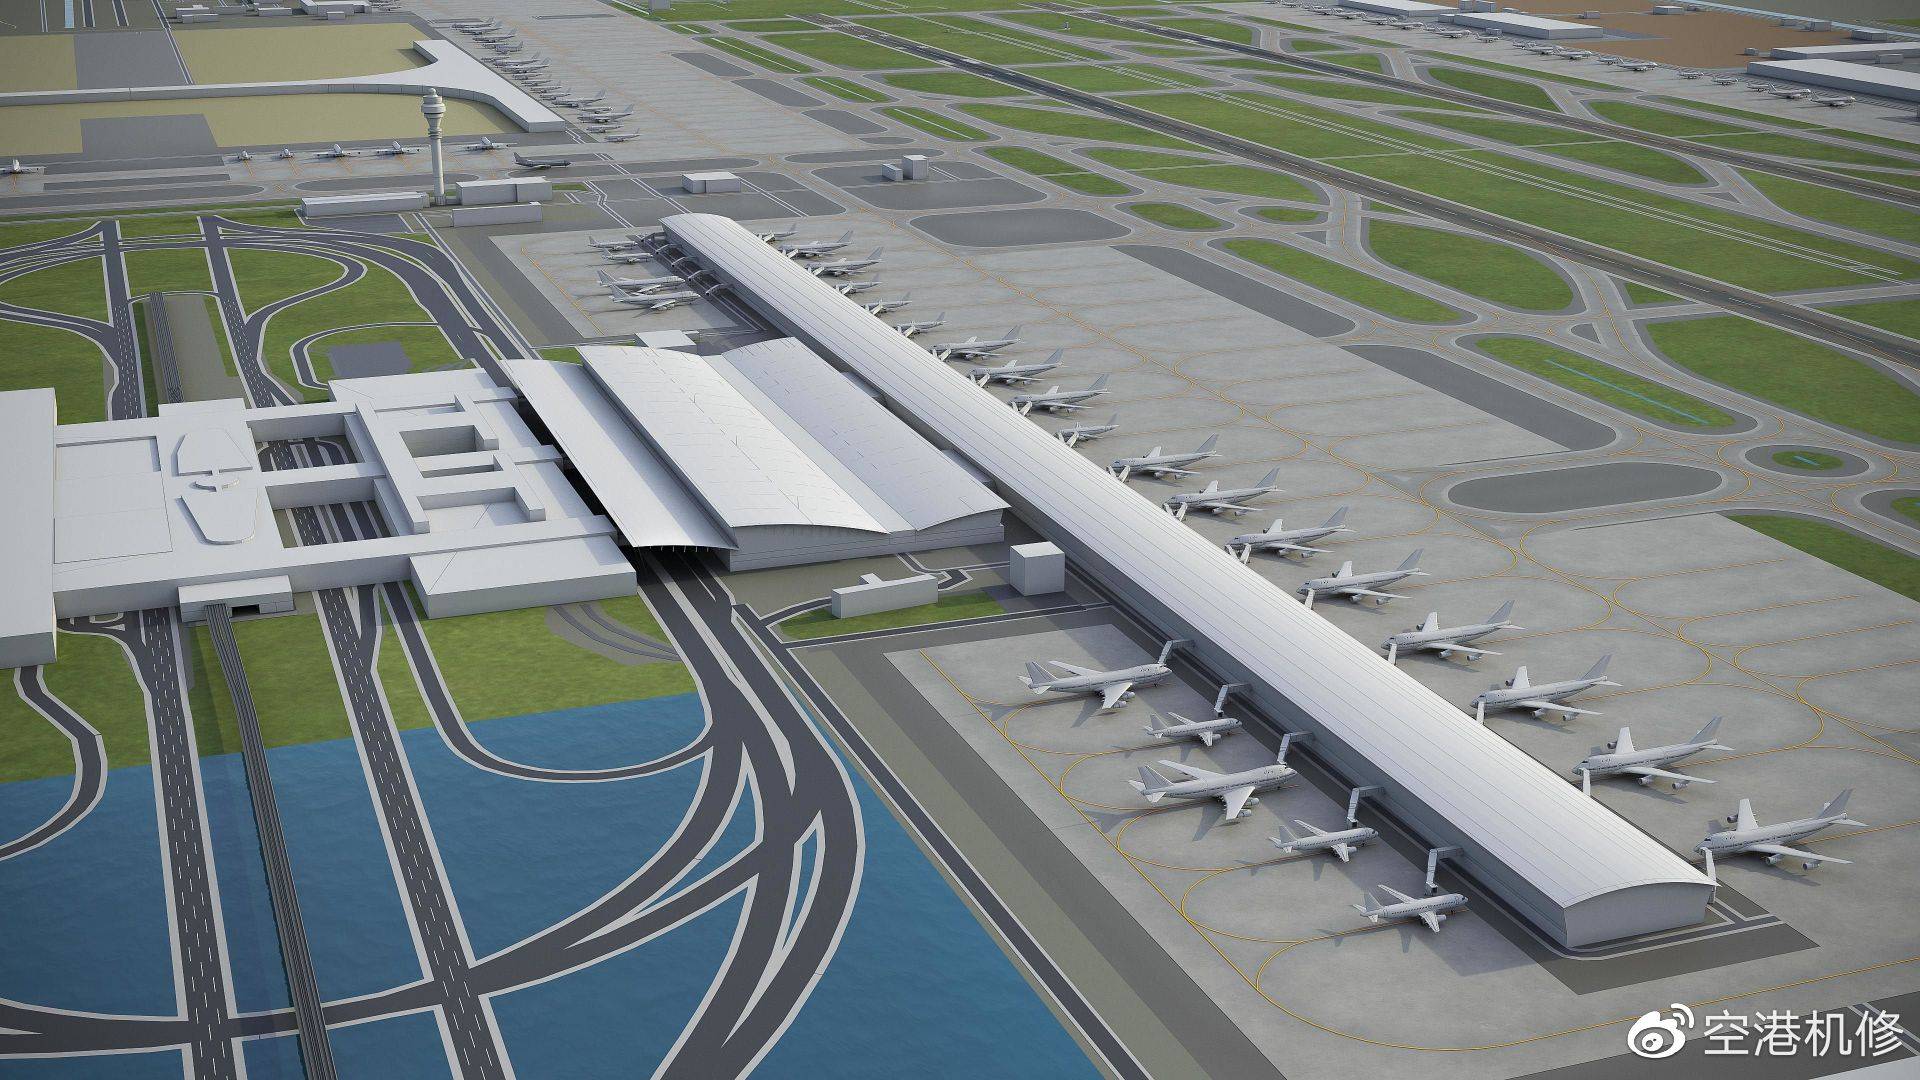 上海浦东机场四期扩建工程开工建成后可满足年旅客吞吐量13亿人次